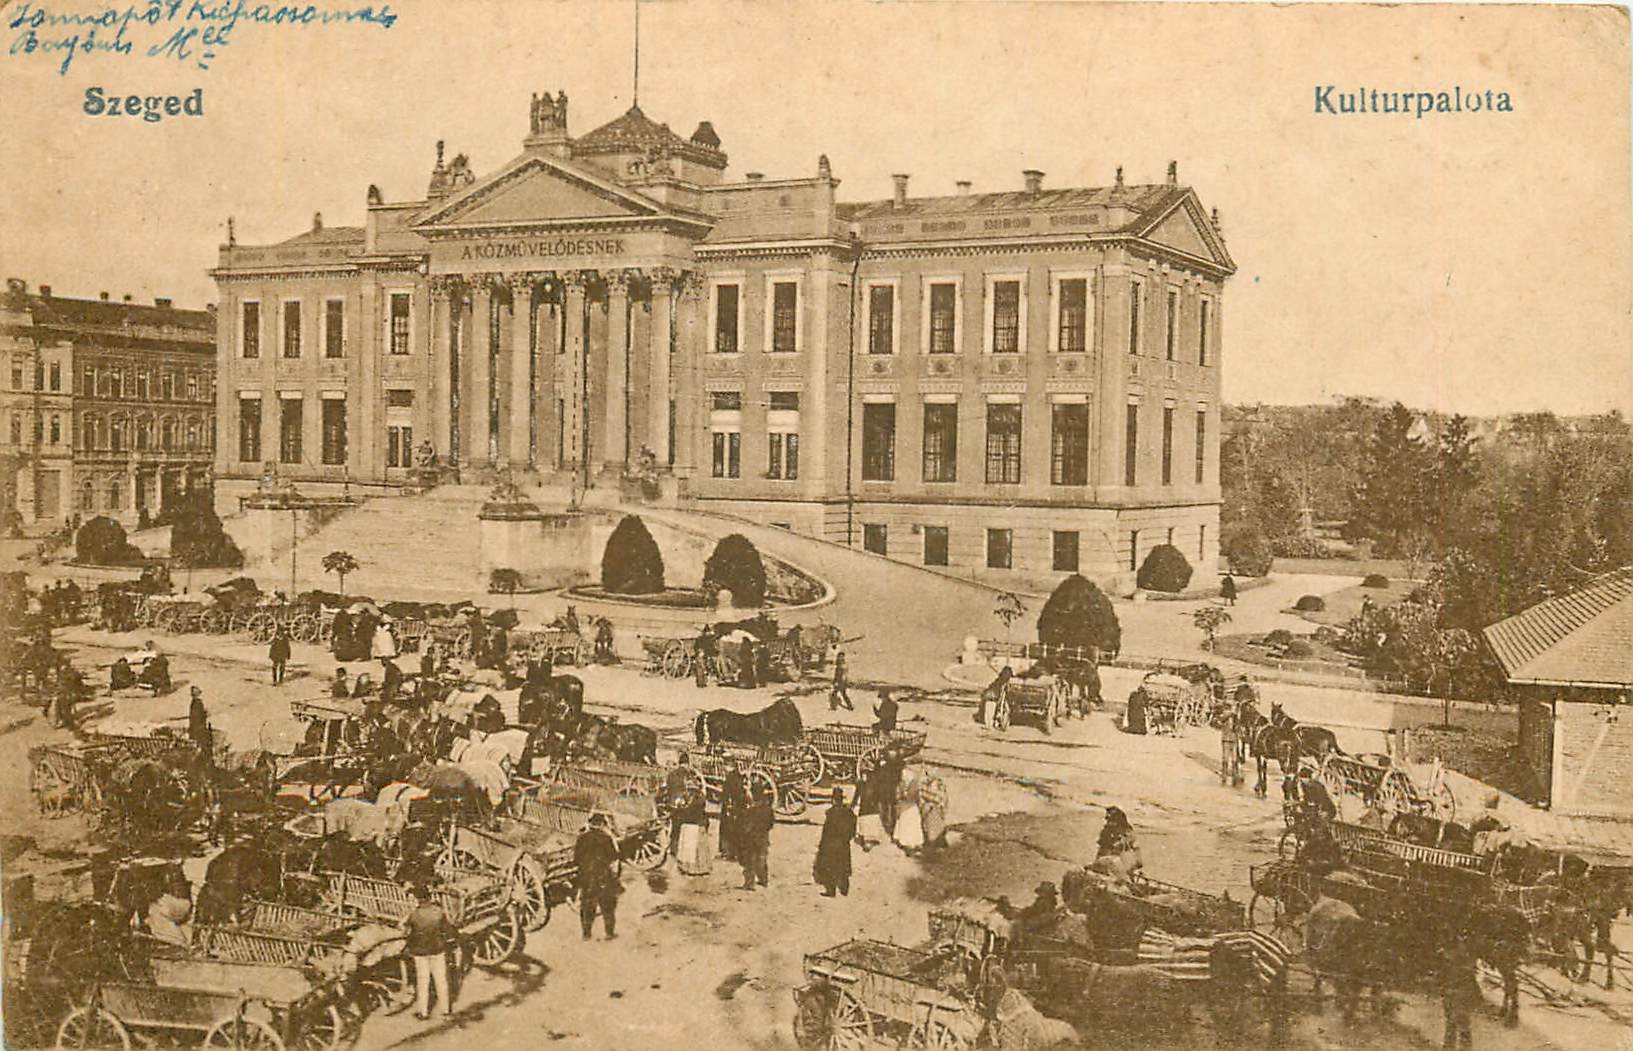 WW SZEGED. Kulturpalota en Hongrie 1919